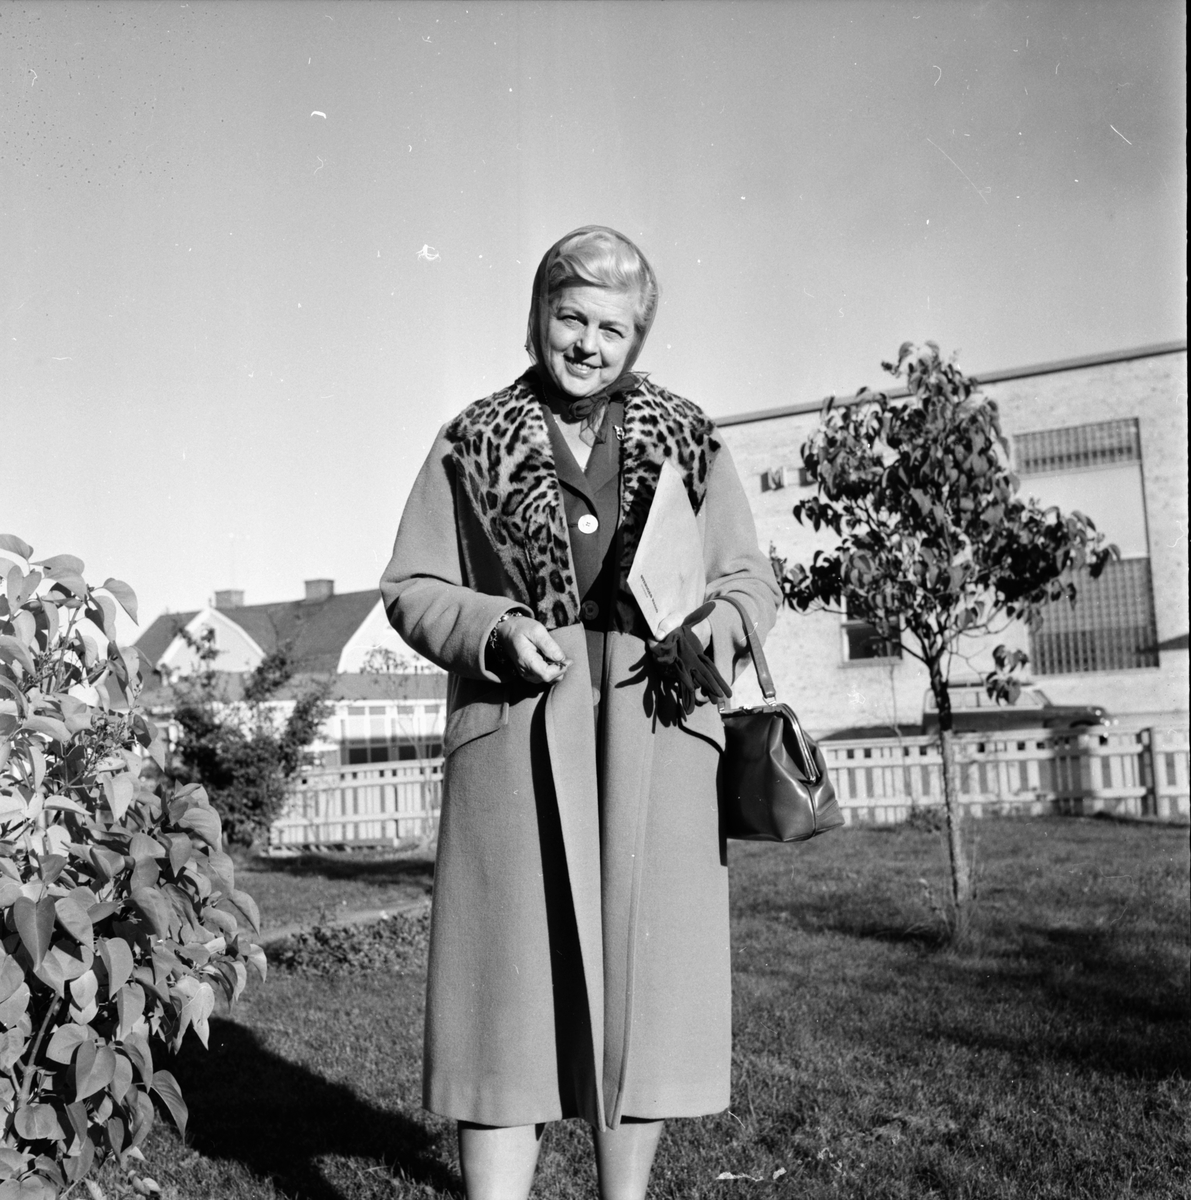 Lingman Karin,
Rädda barnen,
6 Okt 1964